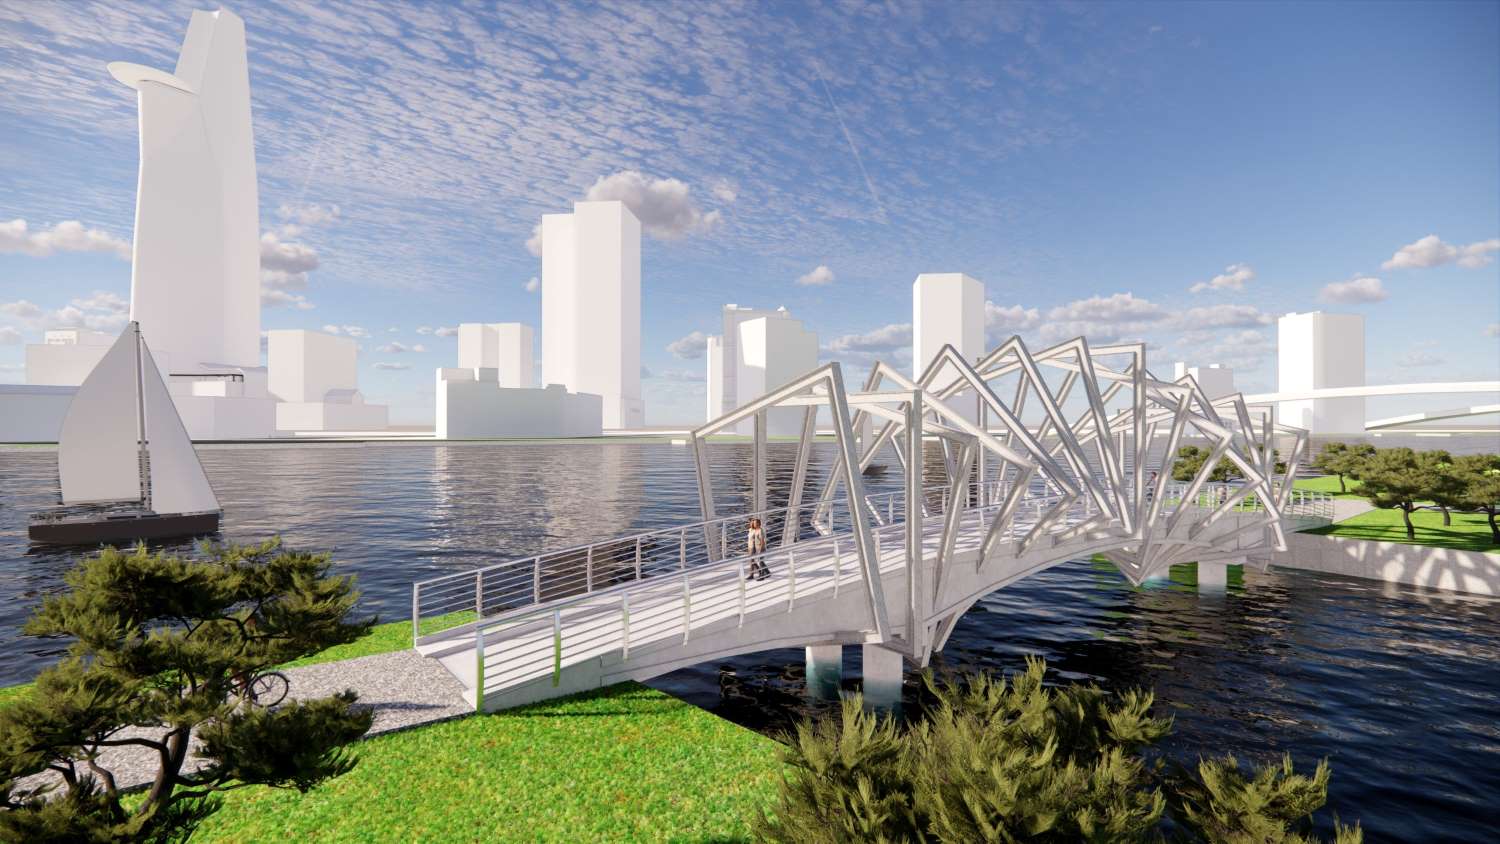 Cầu Ông Cậy sẽ được xây dựng cầu đi bộ với thiết kế độc đáo nhằm thu hút người dân, du khách đến vui chơi.